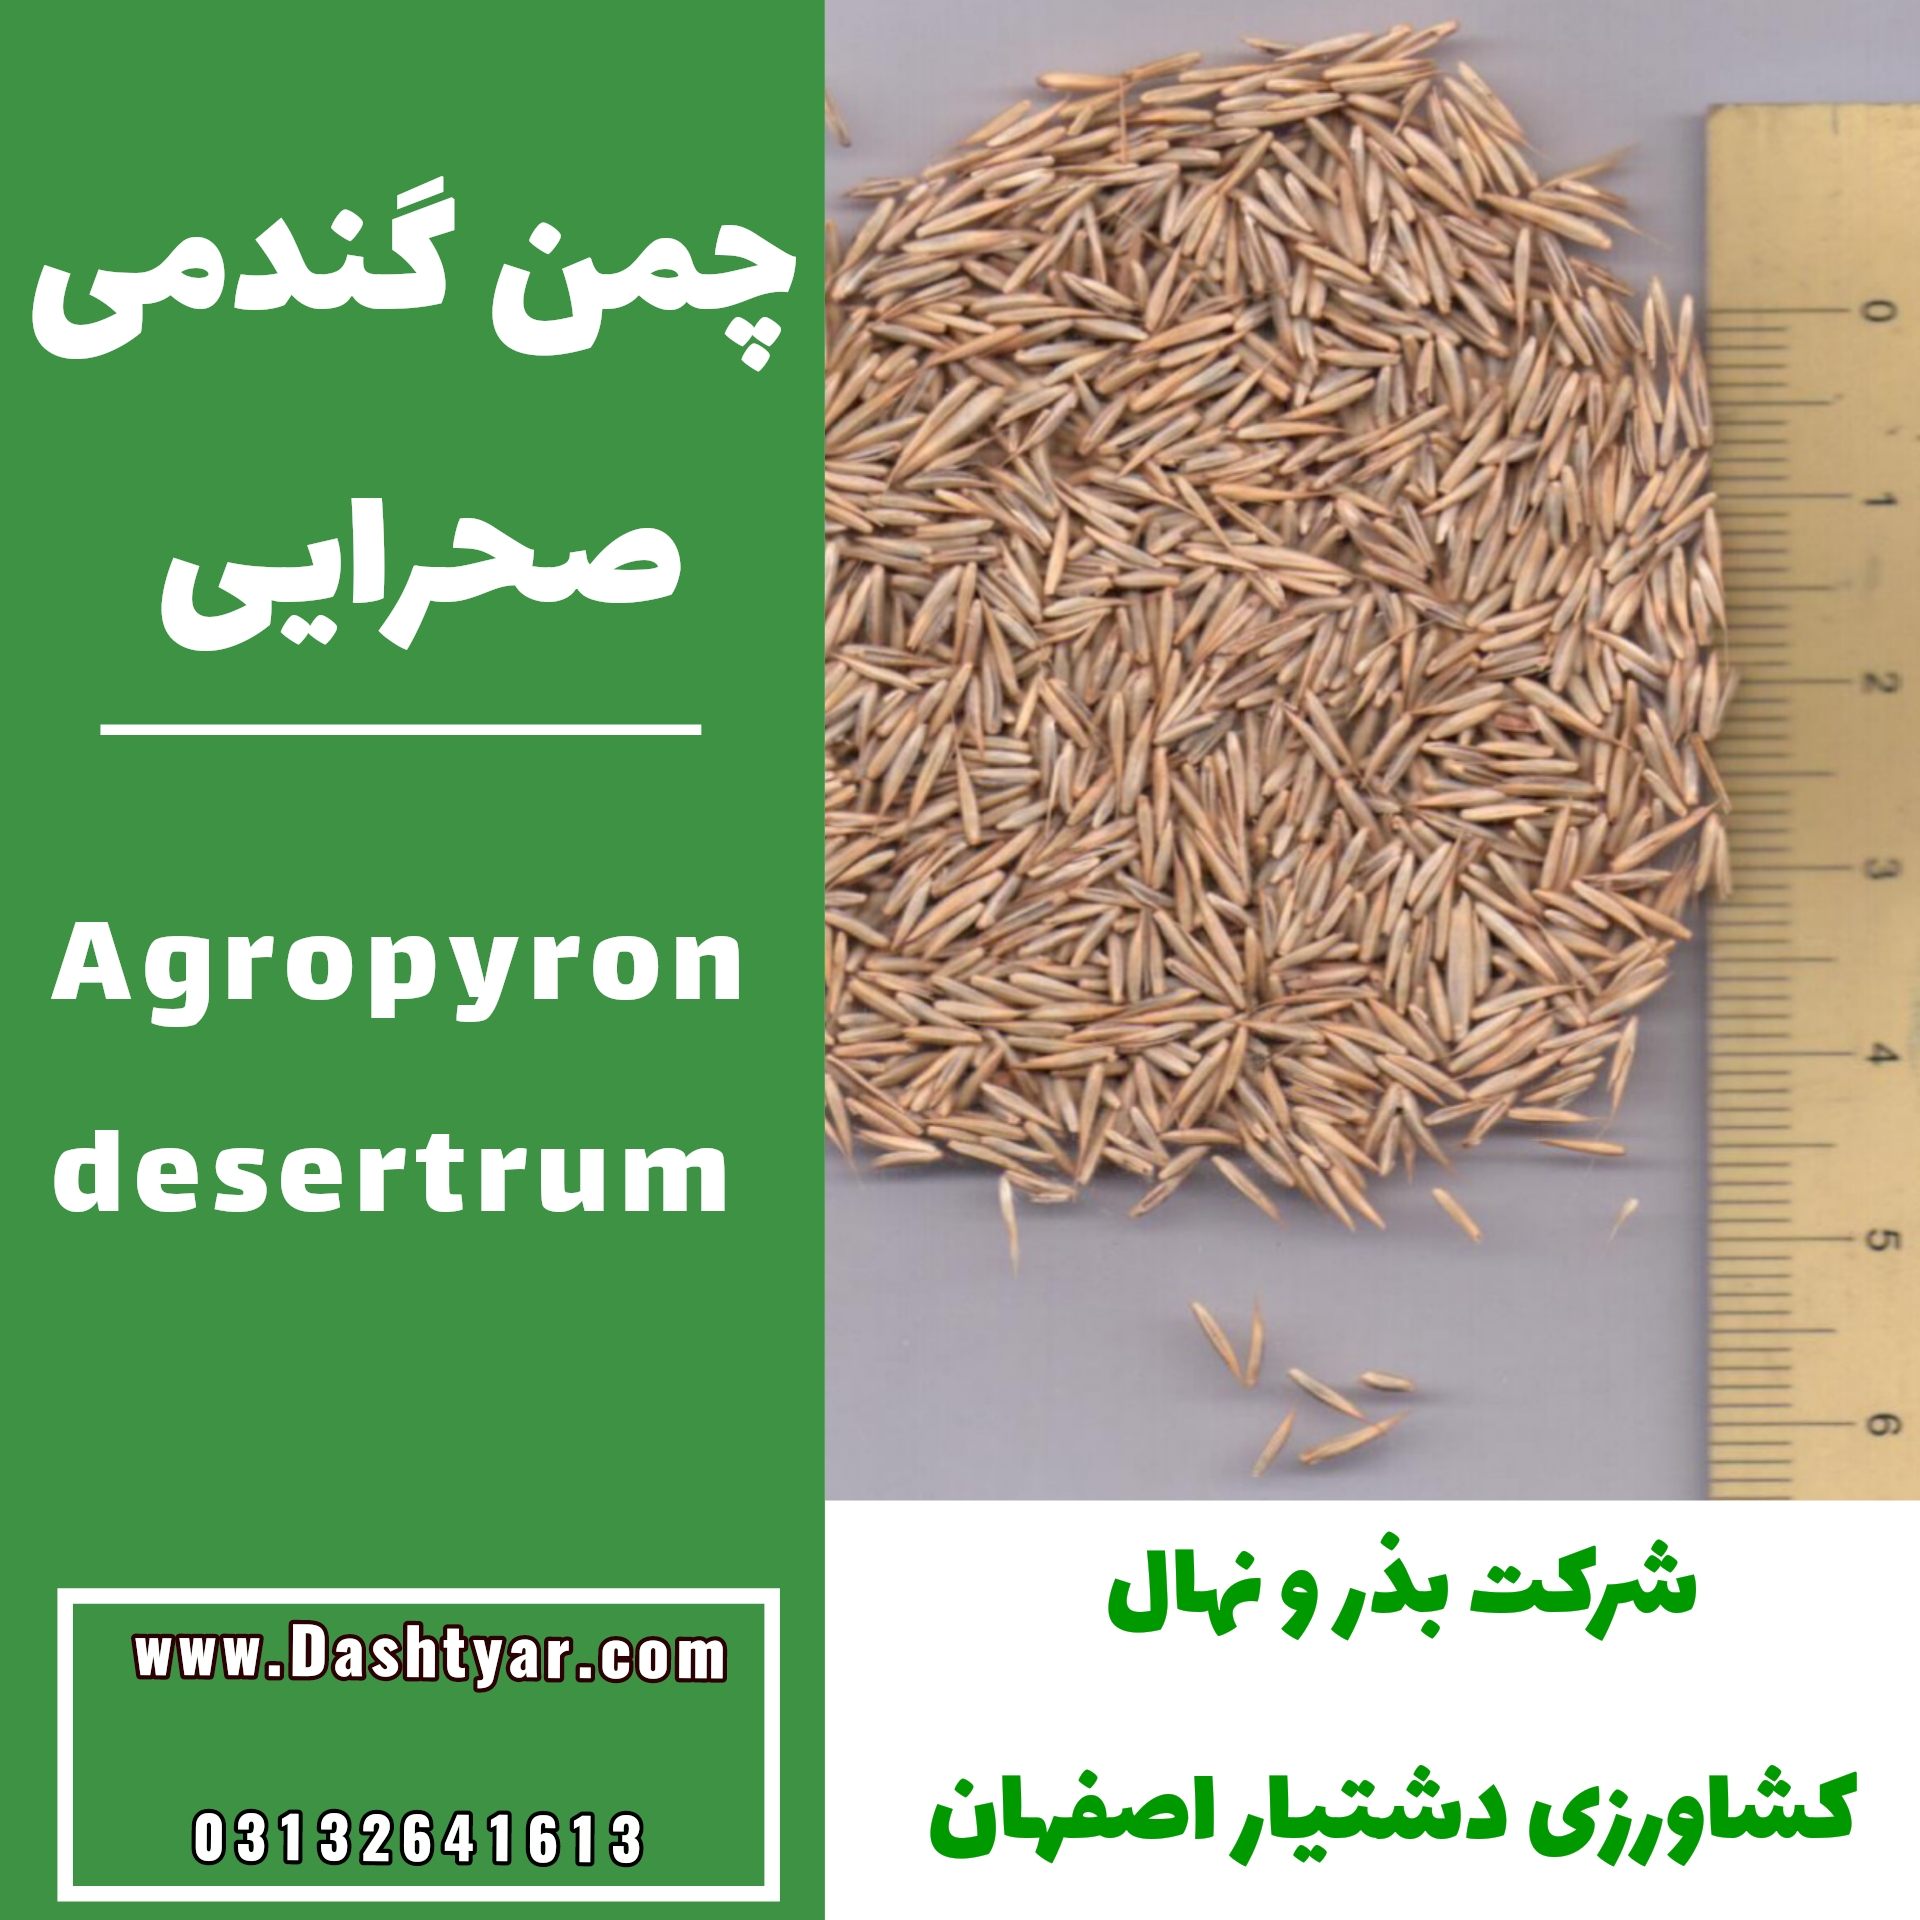 بذر آگروپایرون دزرتروم یا چمن گندمی صحرایی بذر گیاهان مرتعی